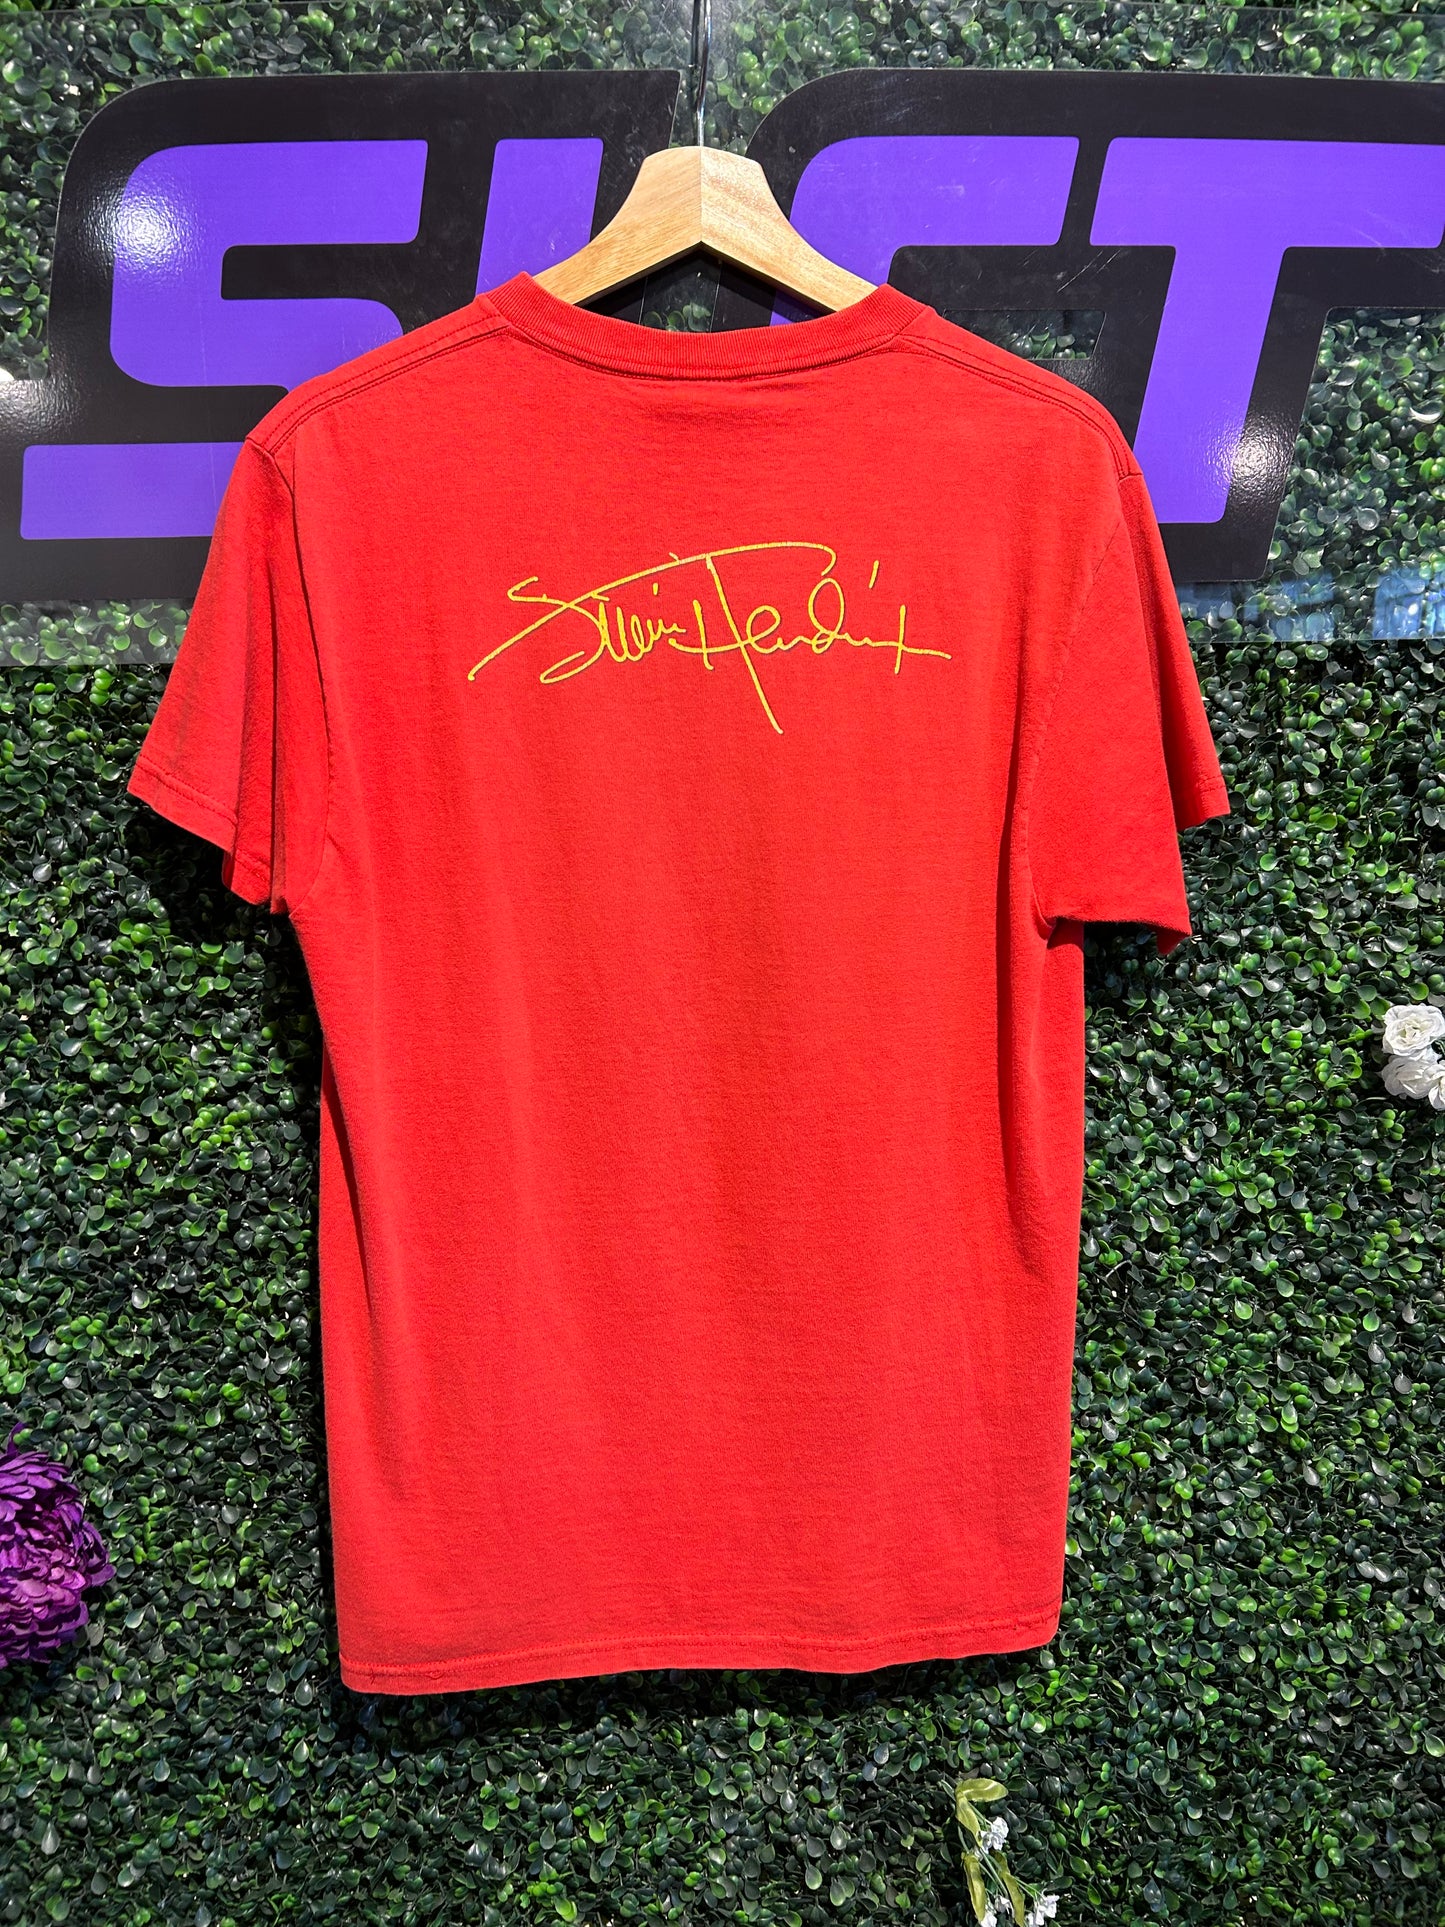 00s Jimi Hendrix Zion T-Shirt. Size Medium